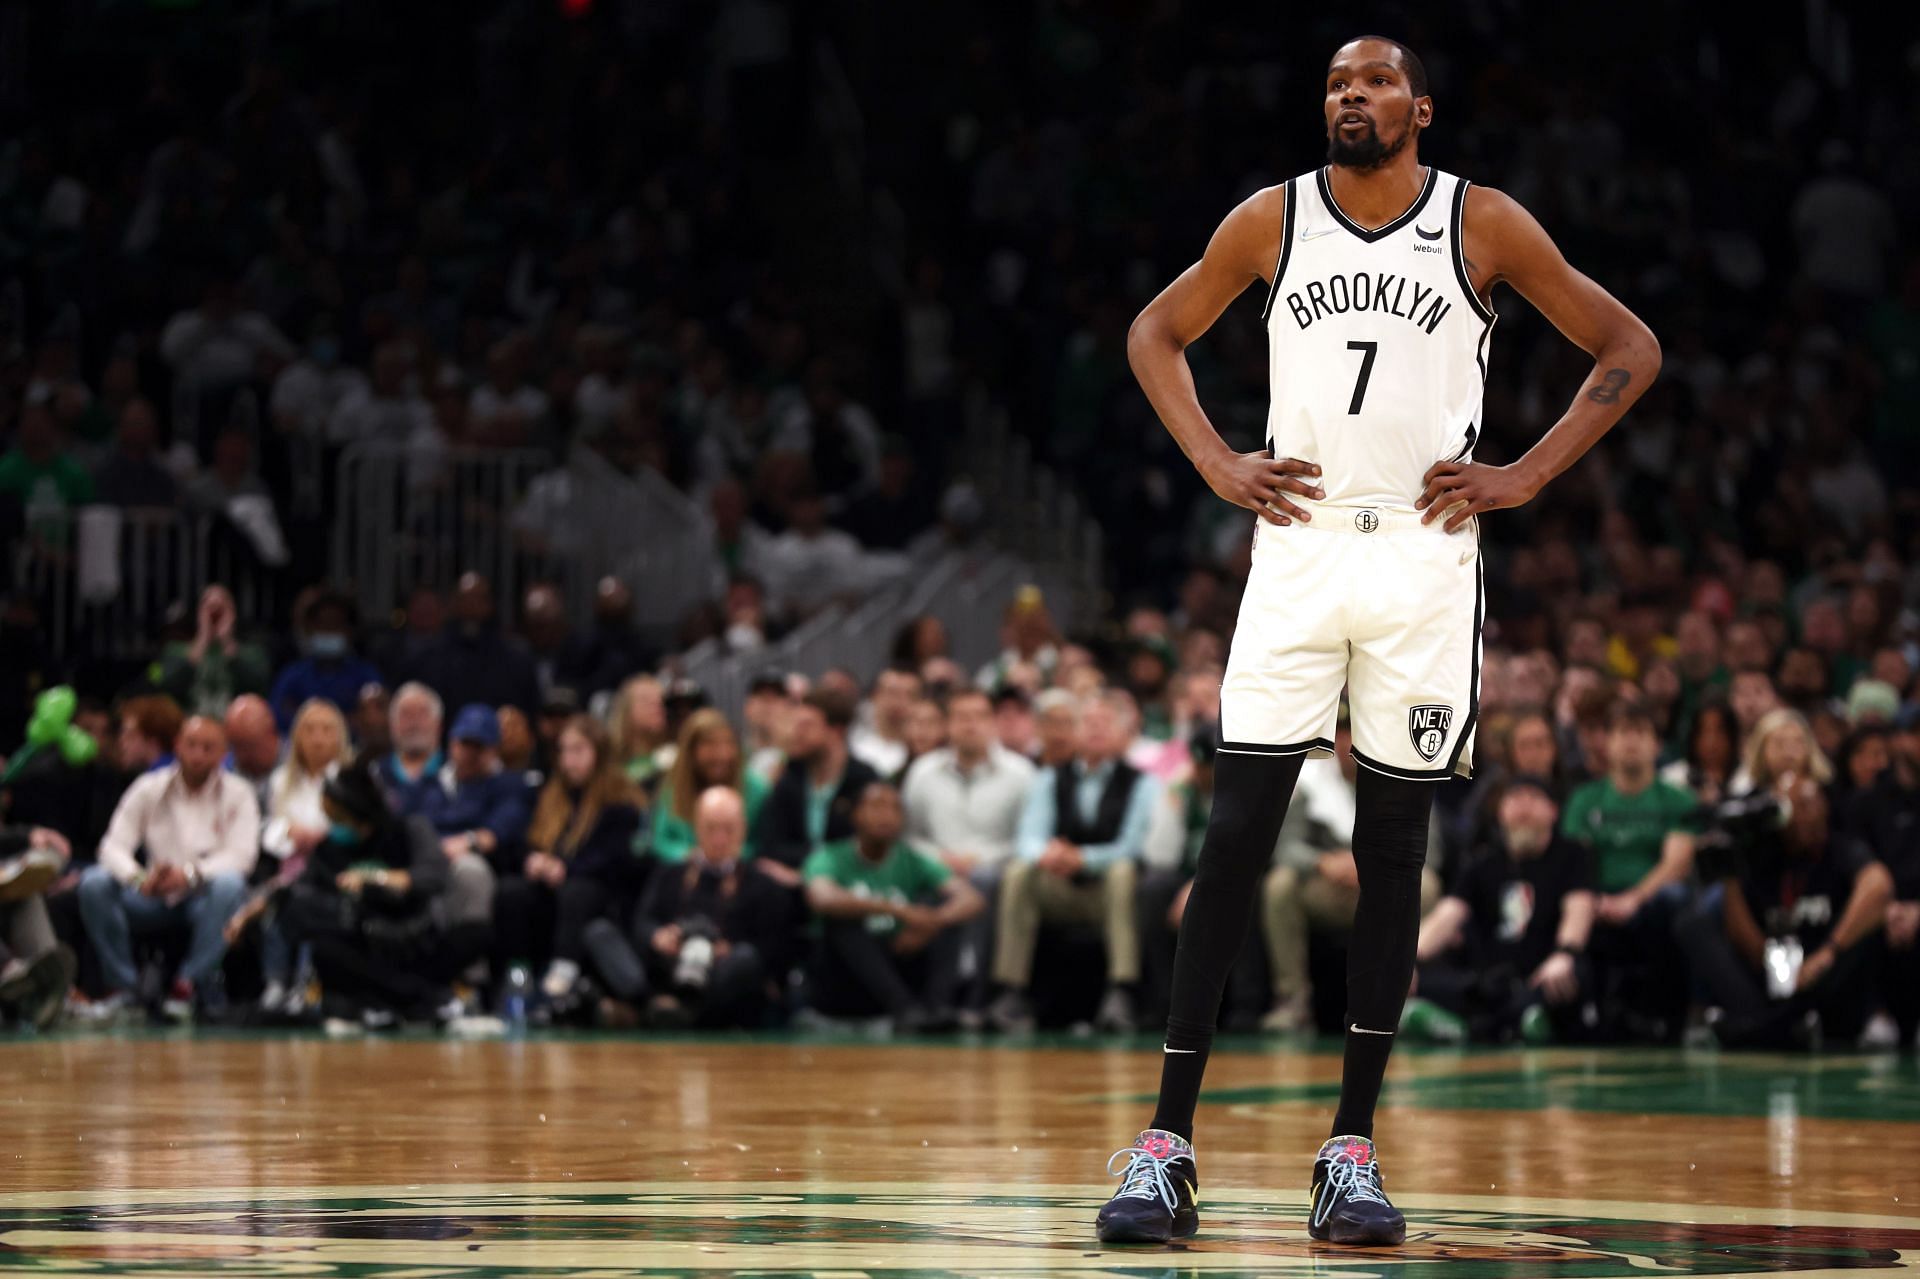 Brooklyn Nets star forward Kevin Durant